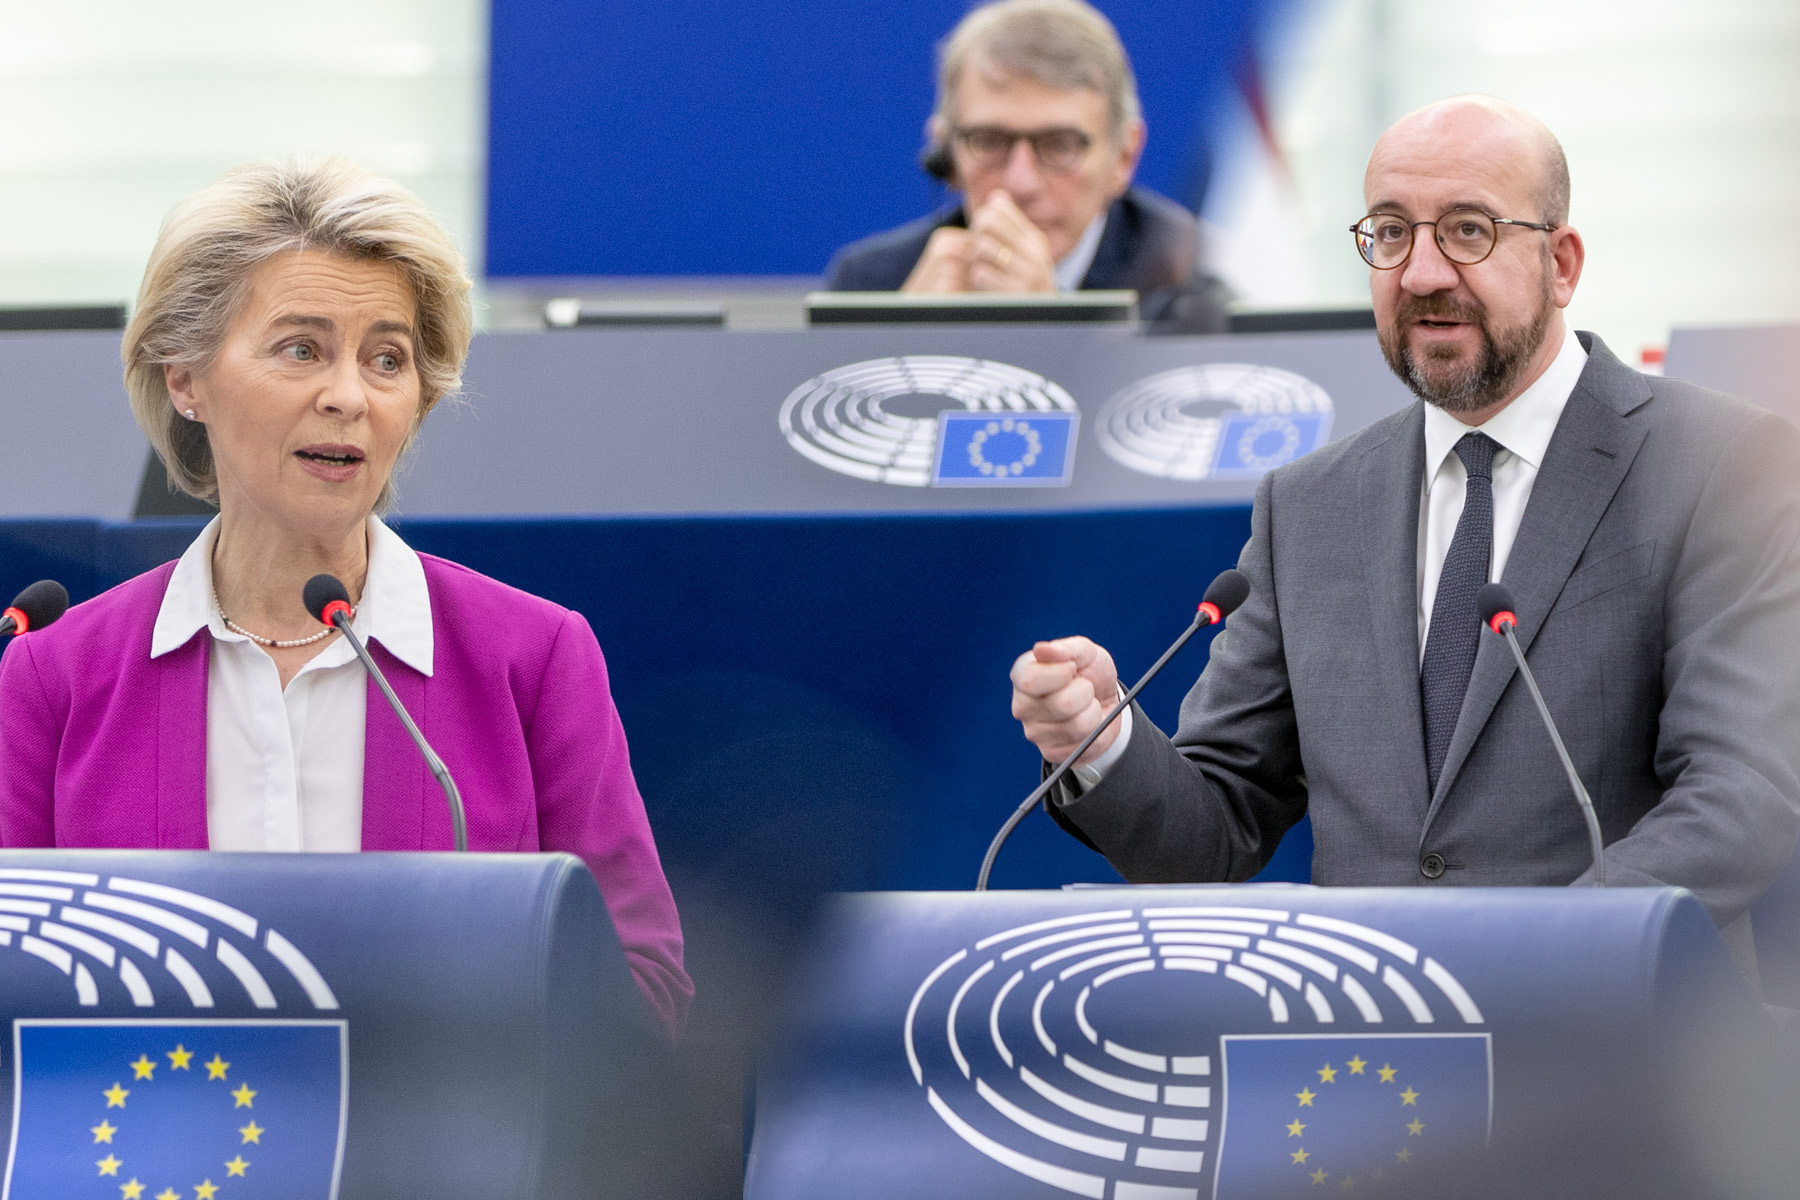 Estado de derecho, COVID-19, amenazas híbridas: los eurodiputados debaten los resultados de la cumbre de la UE |  Noticias |  Parlamento Europeo